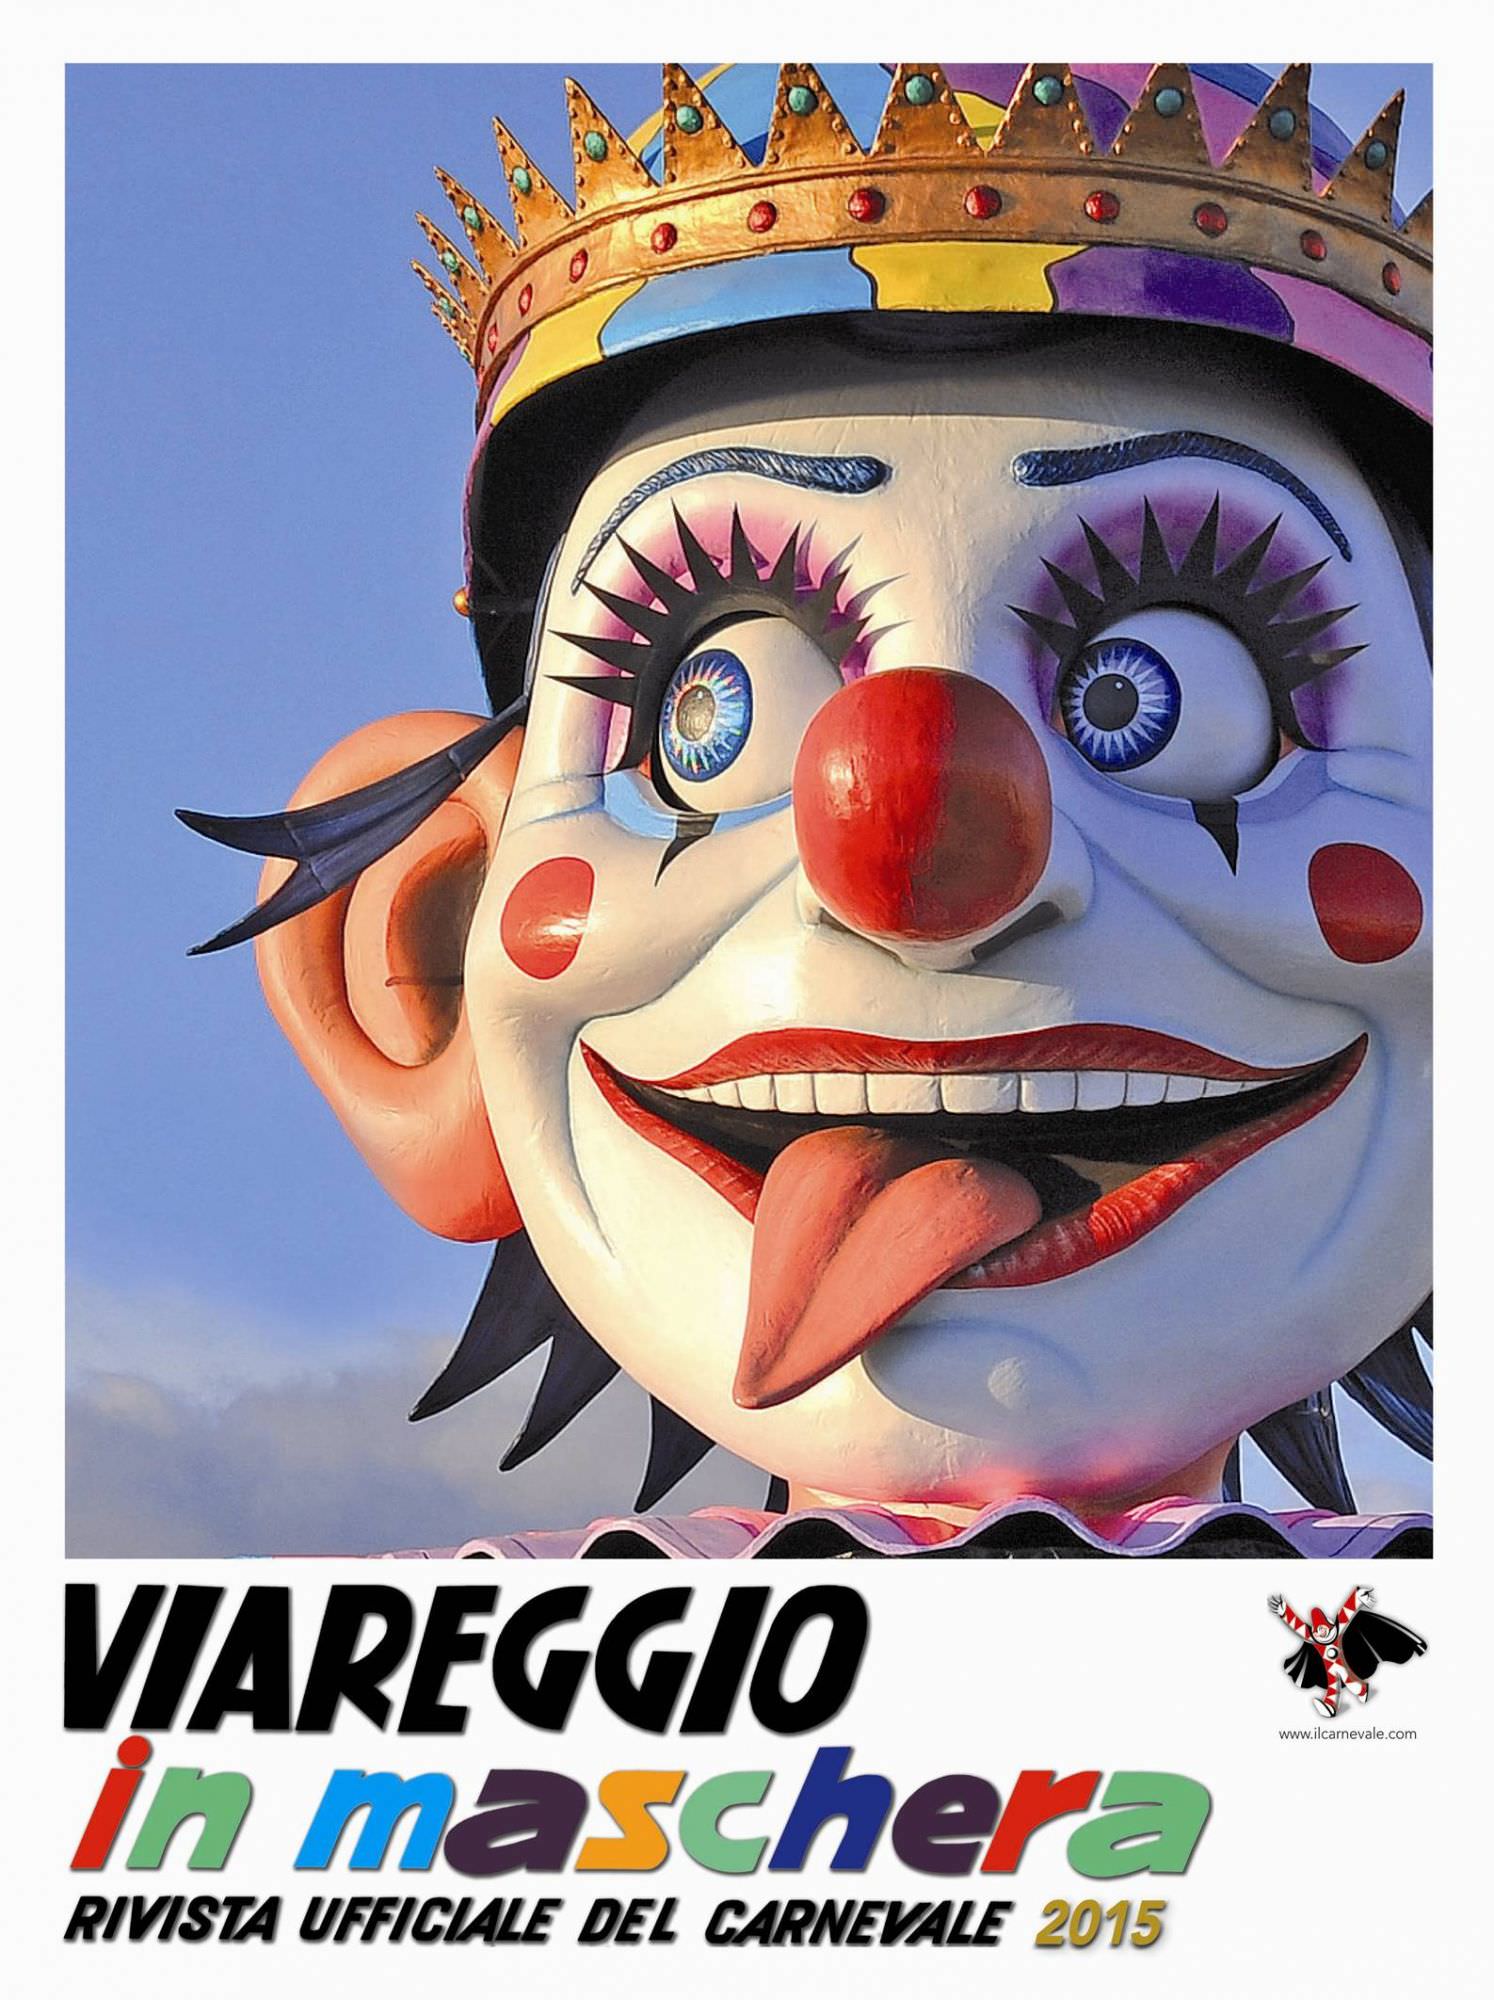 Uscita “Viareggio in maschera”, la rivista ufficiale del Carnevale di Viareggio 2015